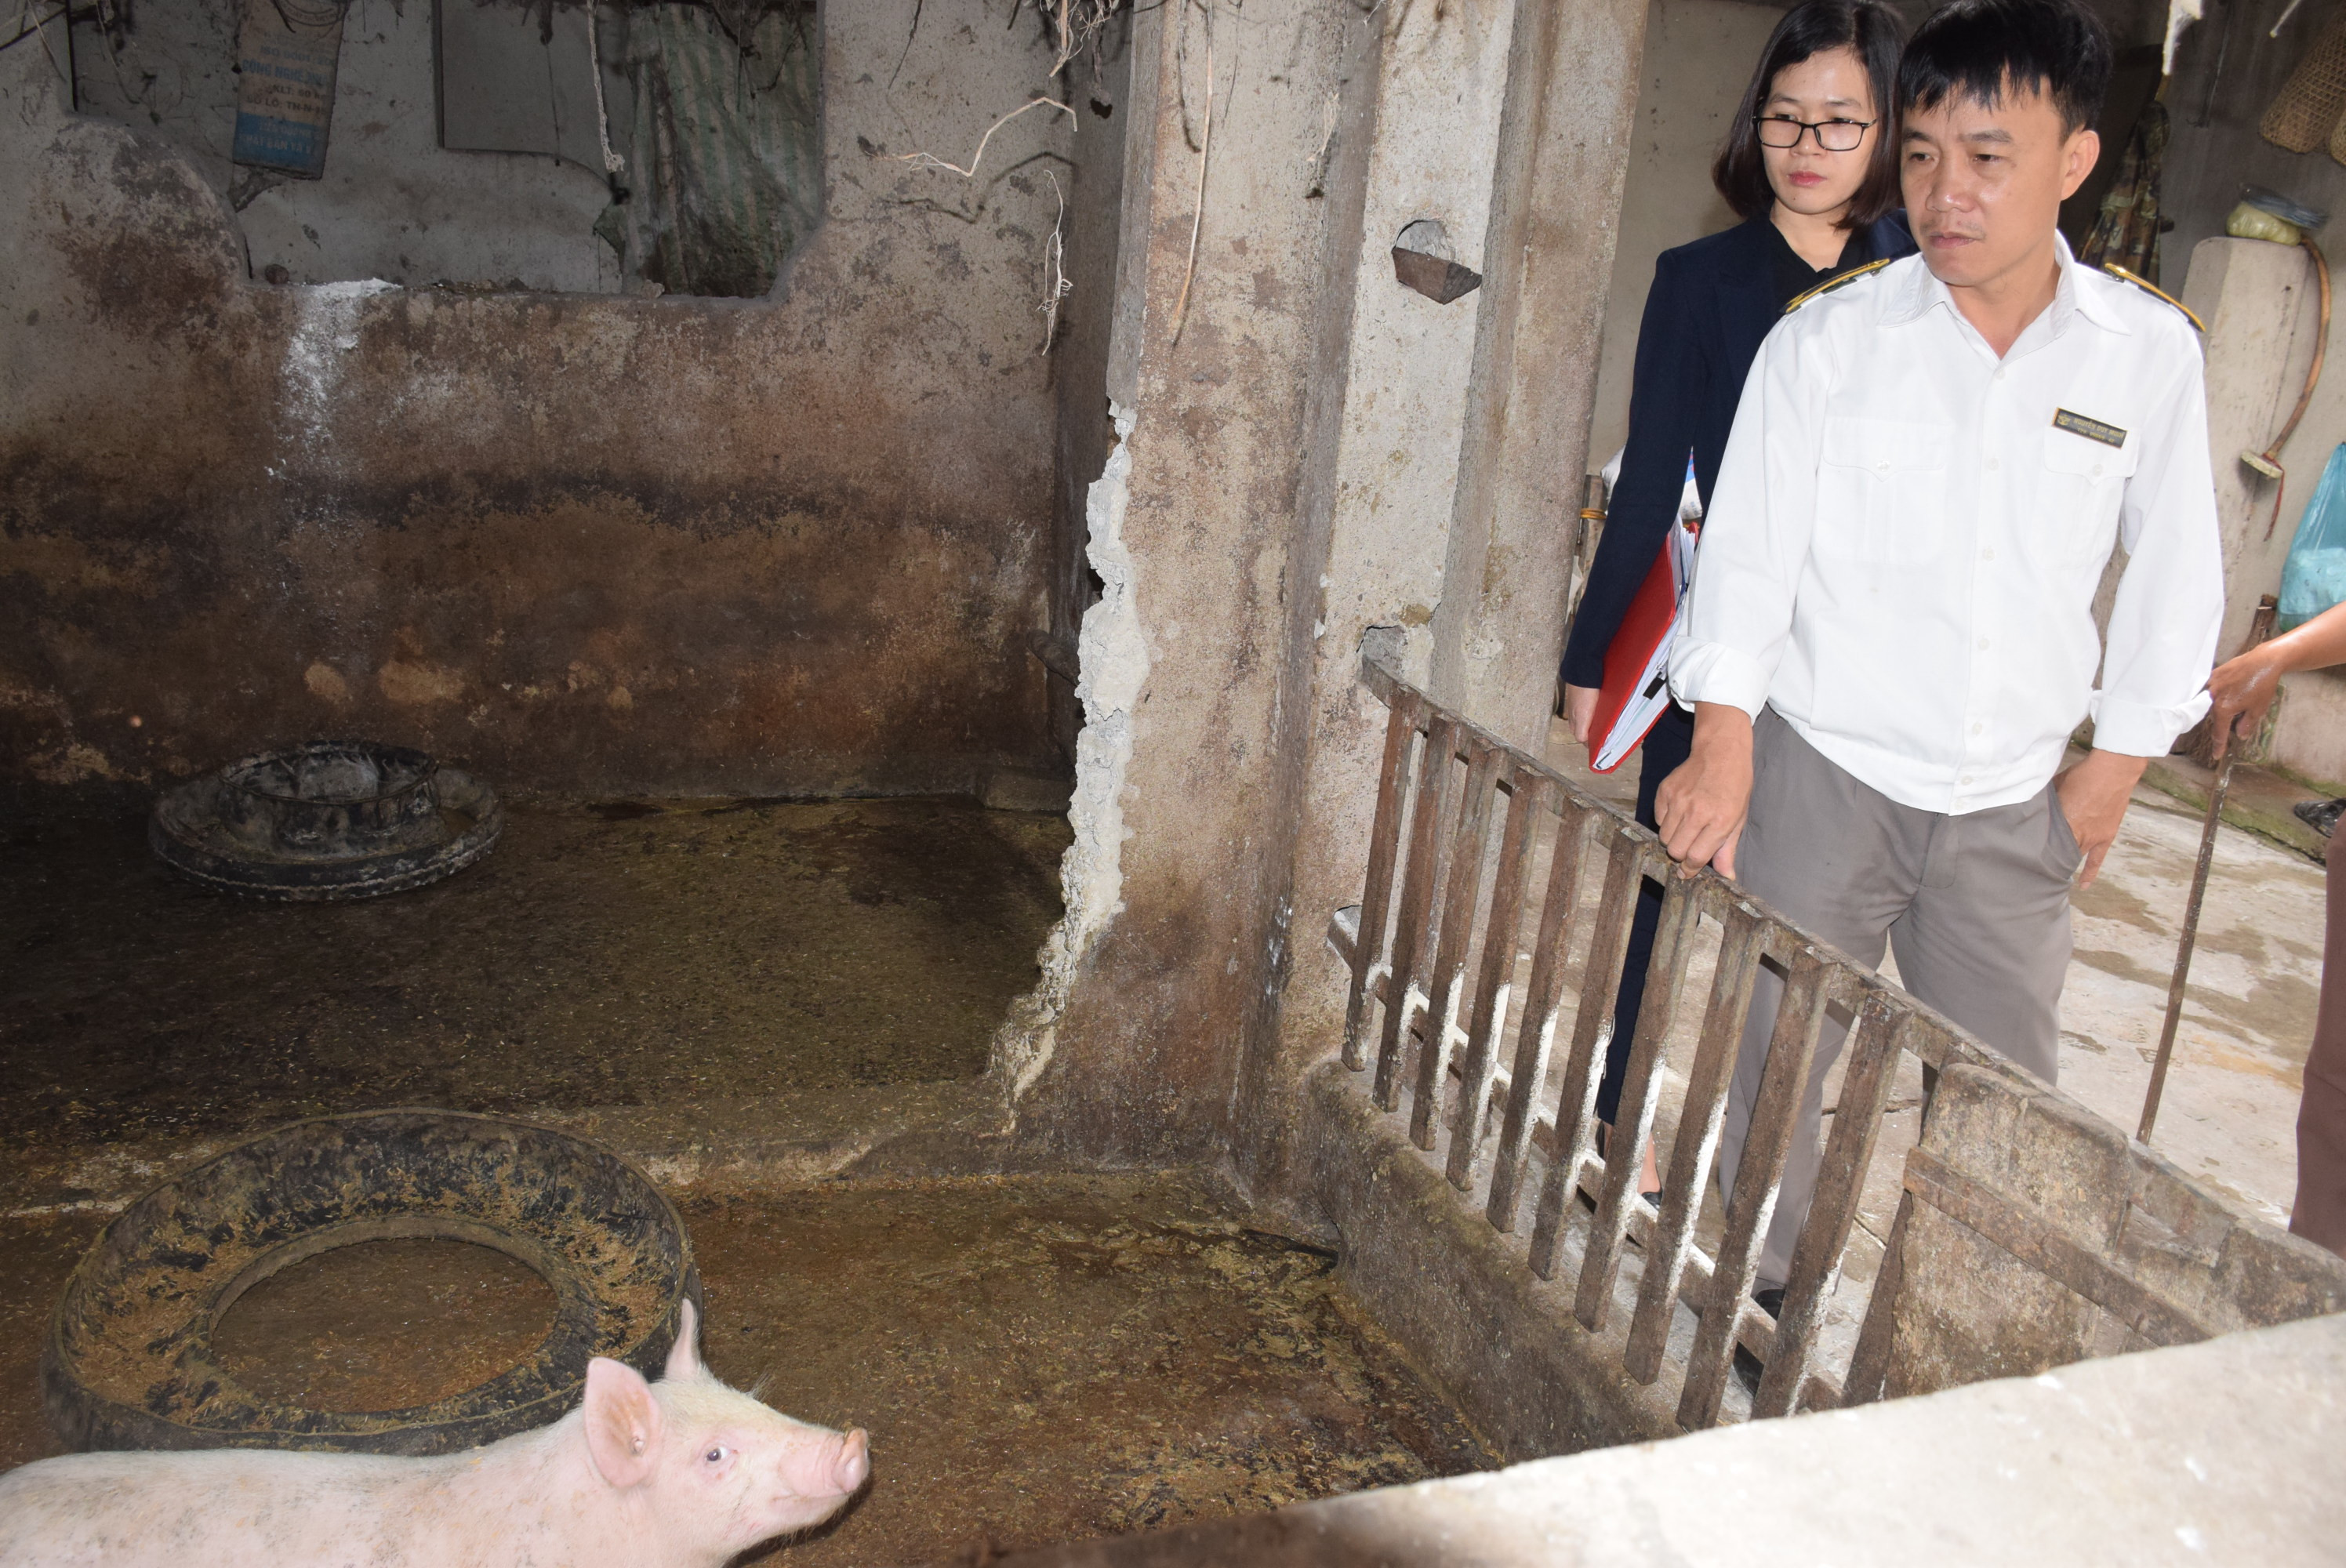 Số lượng lợn được nuôi trong nông hộ nhỏ lẻ hiện đang ít, nên khônng đáp ứng nhu cầu thịt lợn. Ảnh: Xuân Hoàng